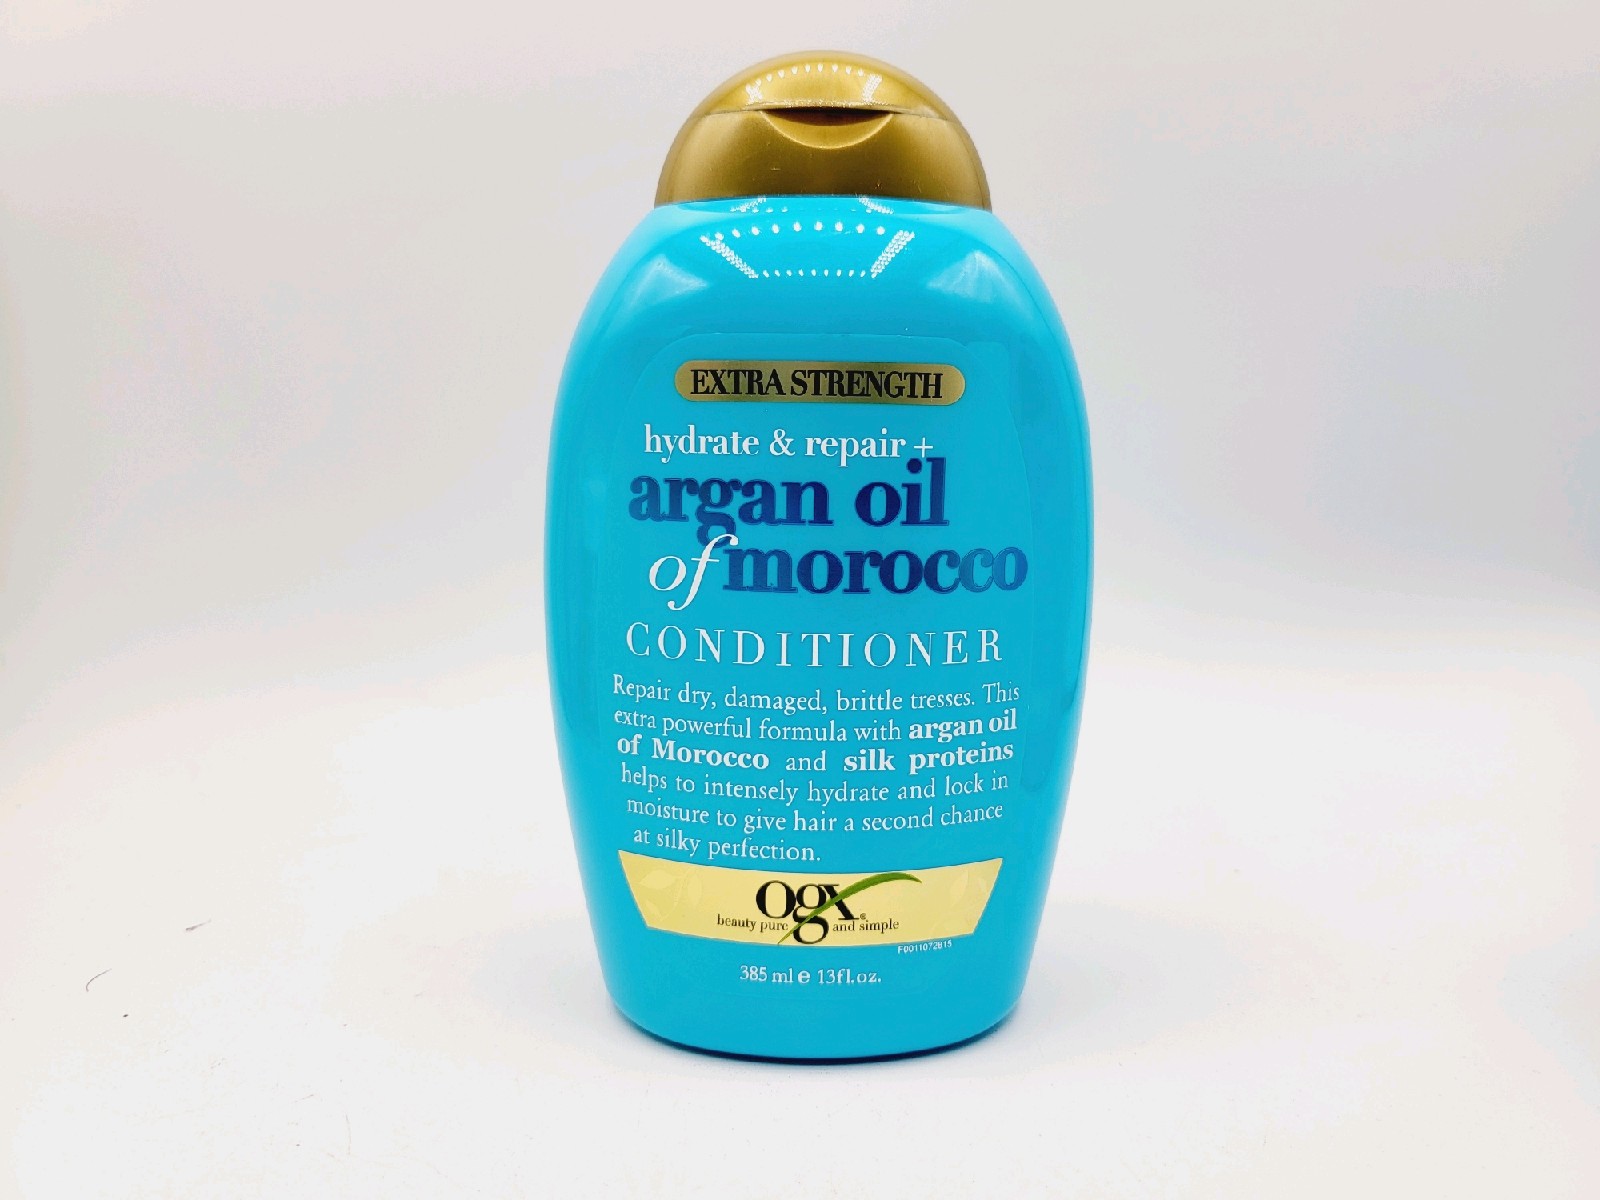 Ogx Argan Oil of Morocco Hydrate & Repair